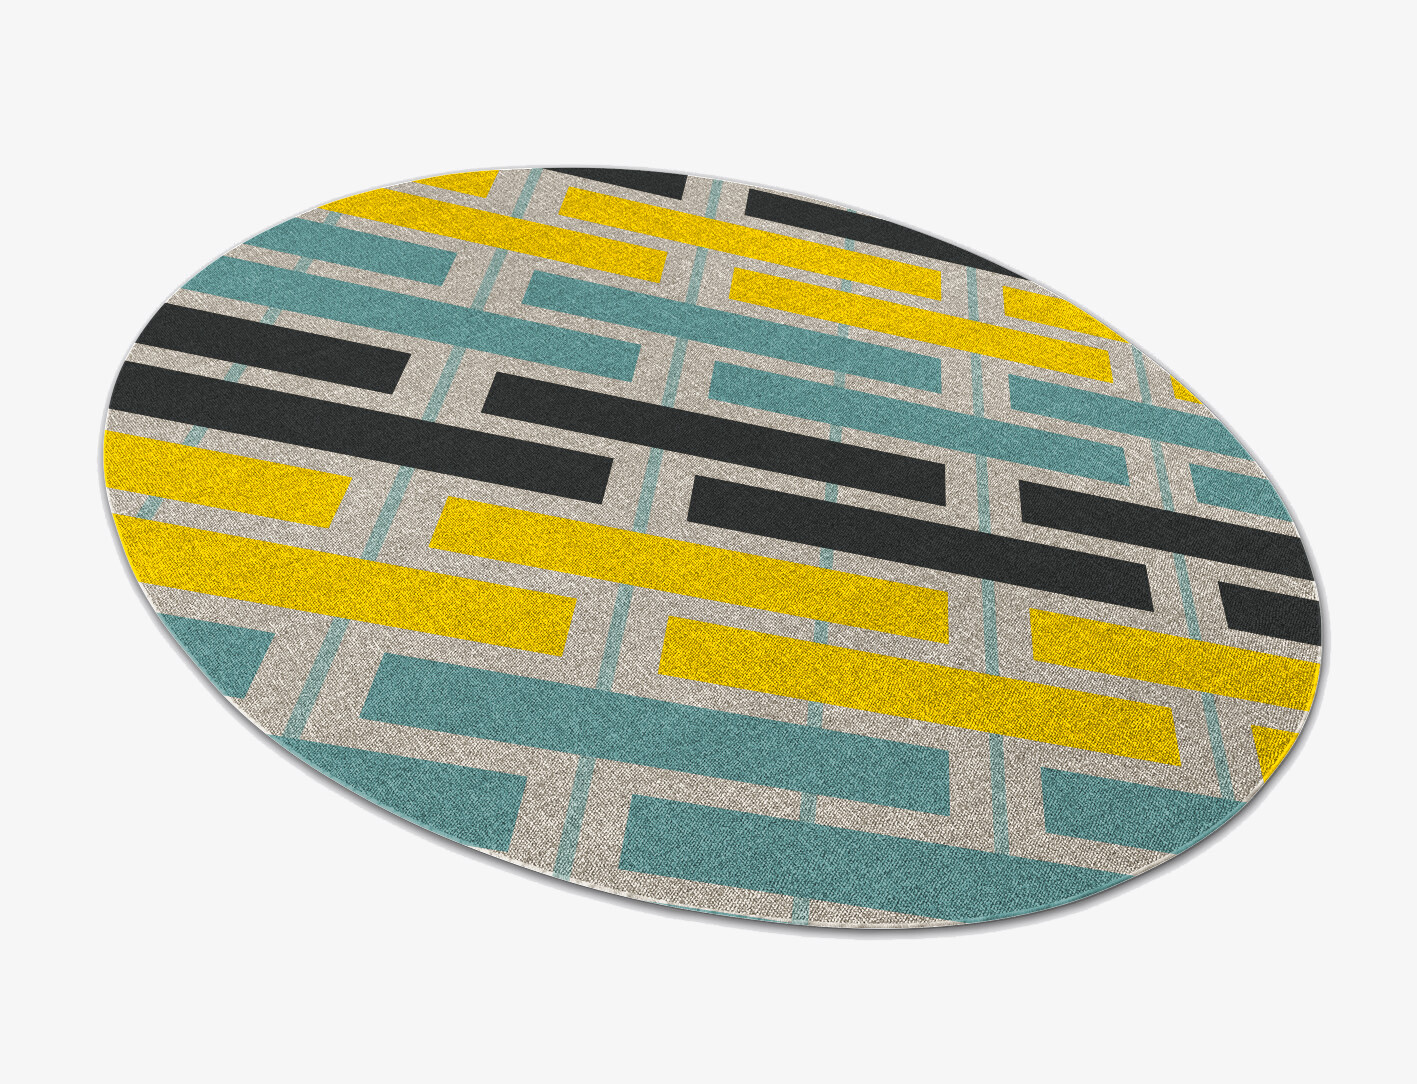 Springs Geometric Oval Flatweave New Zealand Wool Custom Rug by Rug Artisan